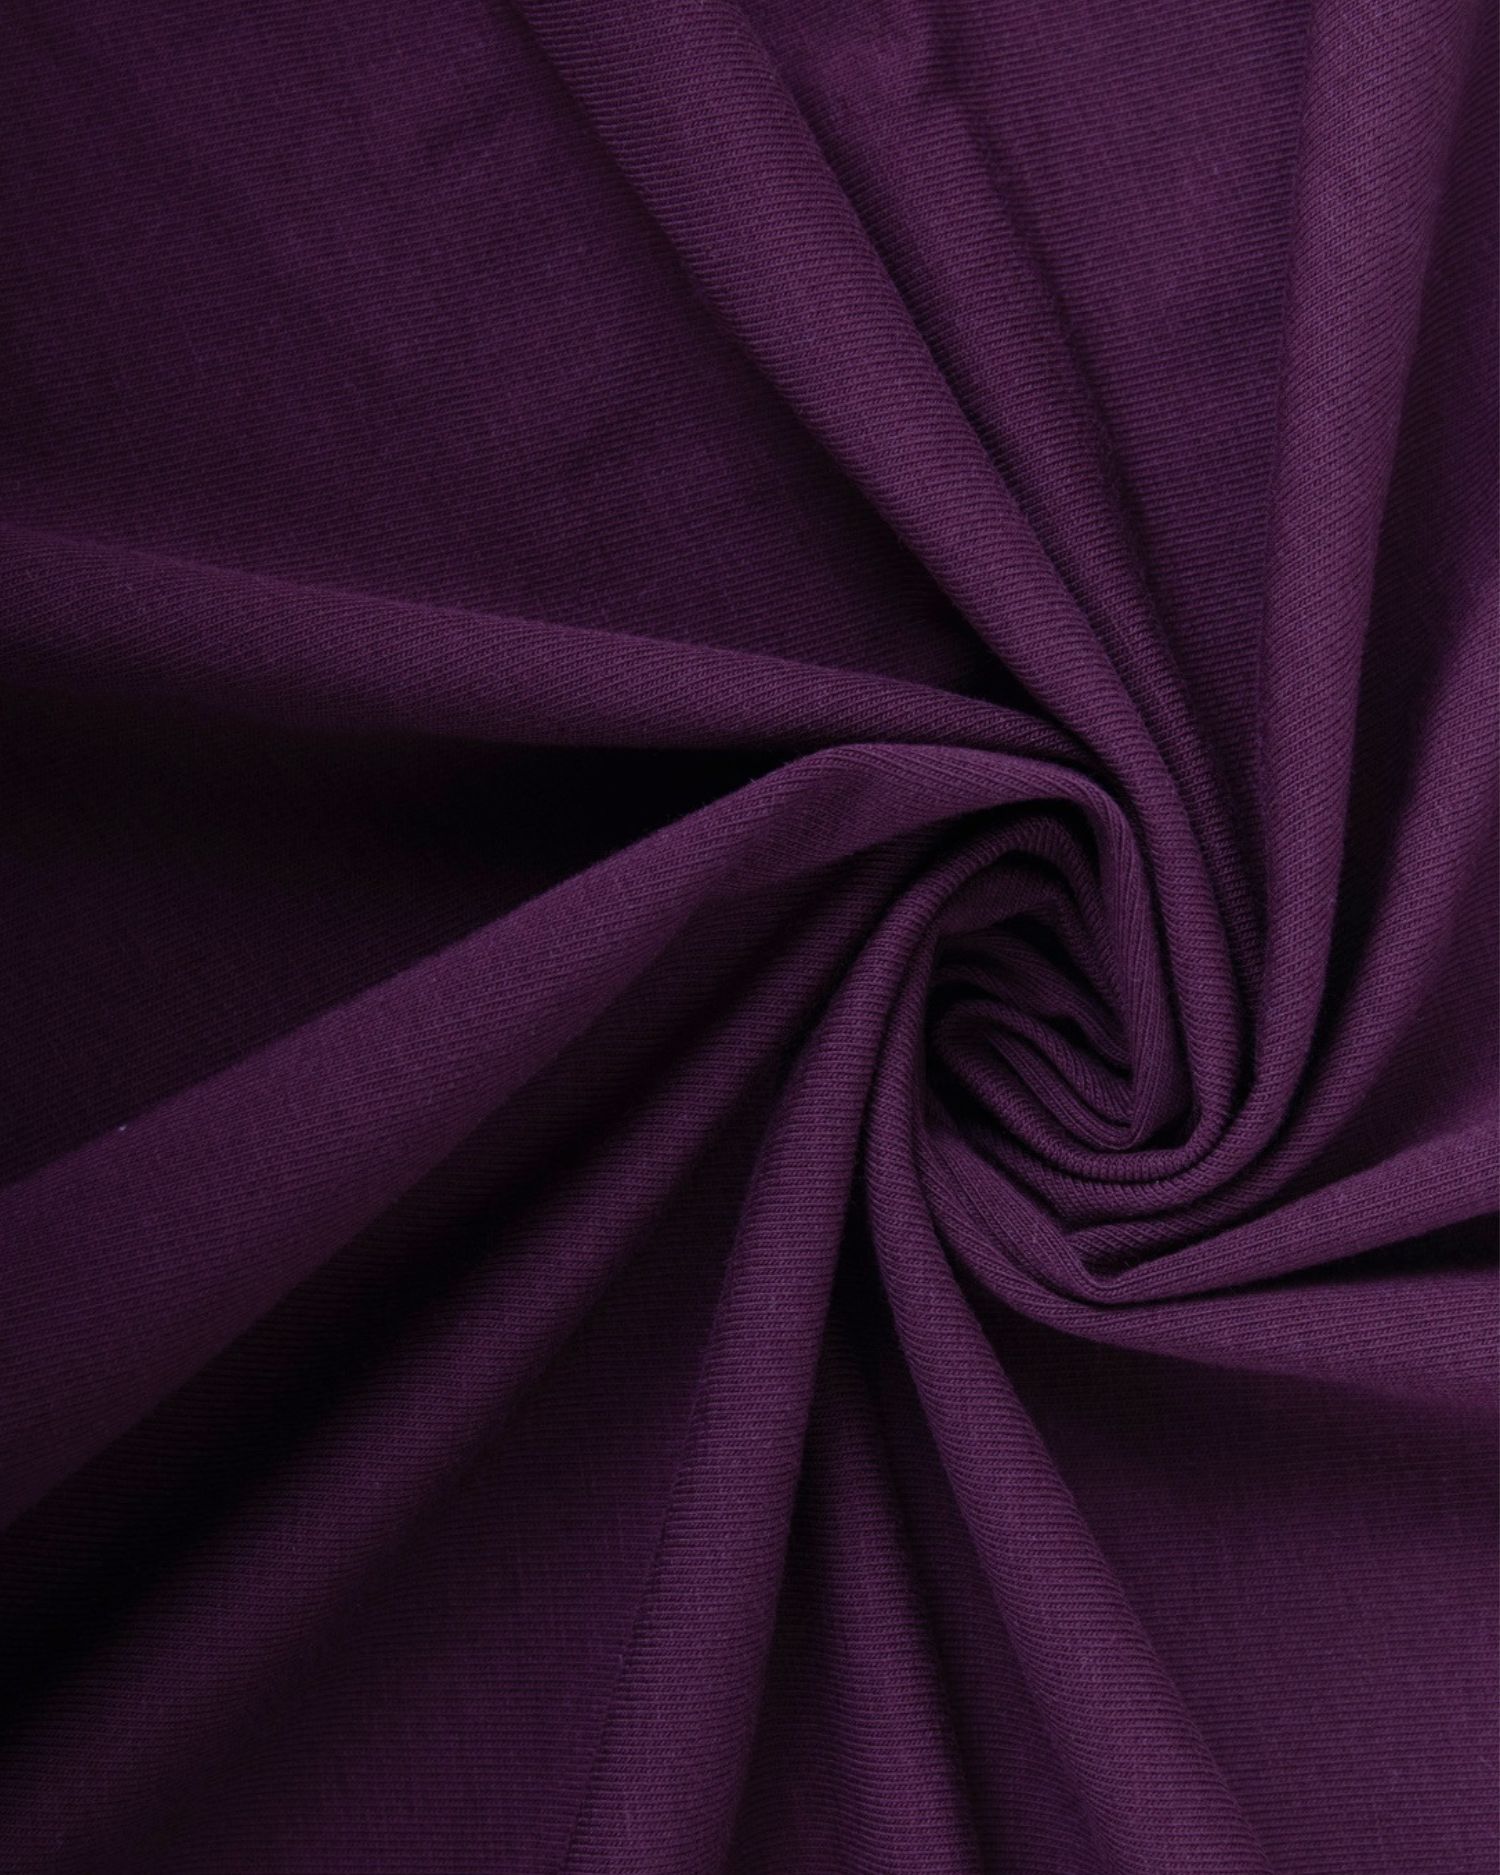 Bavlněný úplet s elastanem, 1 metr, 165gr/m2, tmavě fialový (švestkový)